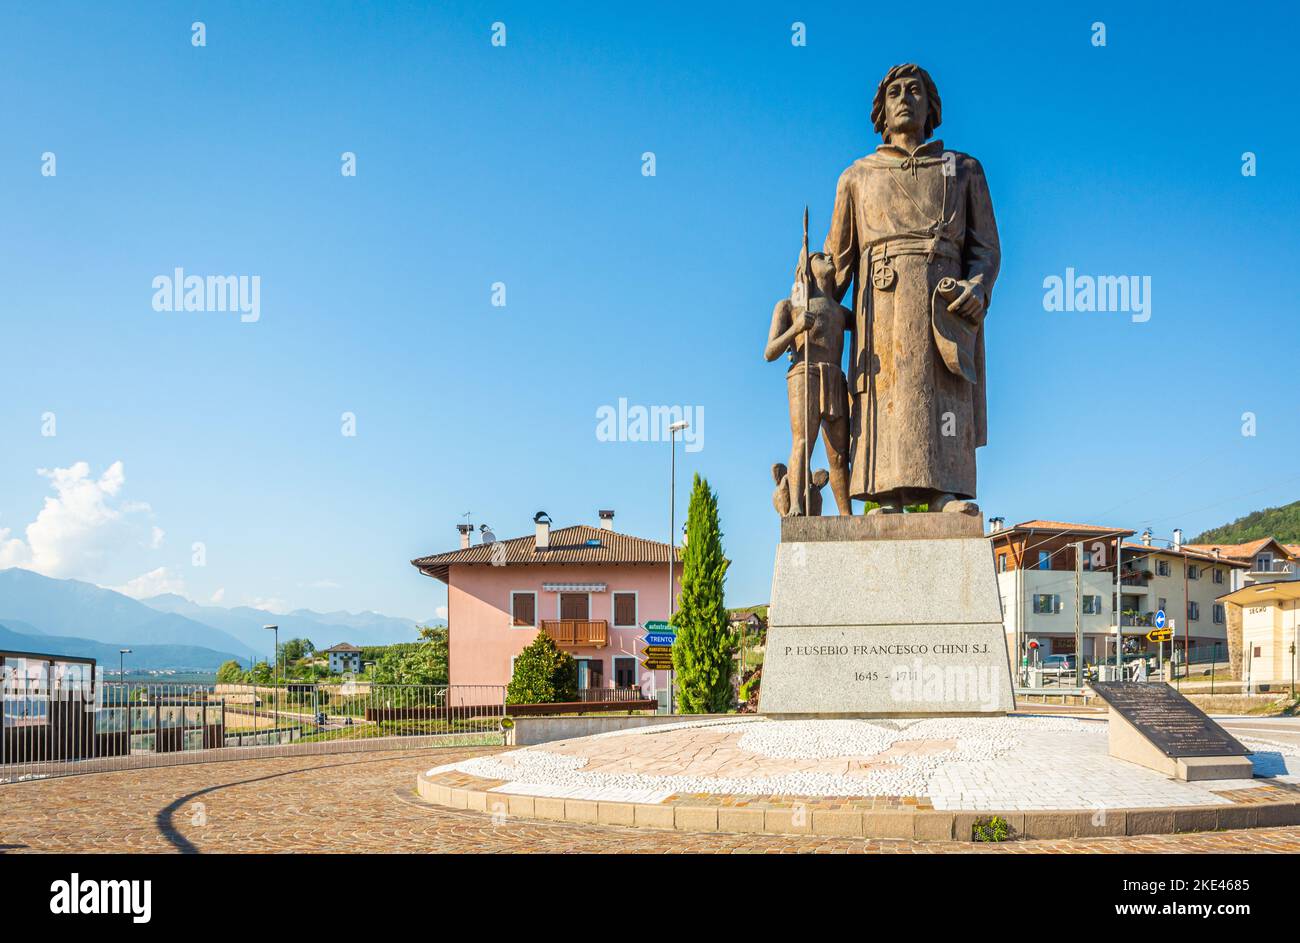 Statua bronzea di Eusebio Chini (Phater Kino) - 1645-1711. Segno,Predaia, Val di non, provincia di Trento,Trentino Alto Adige - Italia - 21 agosto 2020 Foto Stock